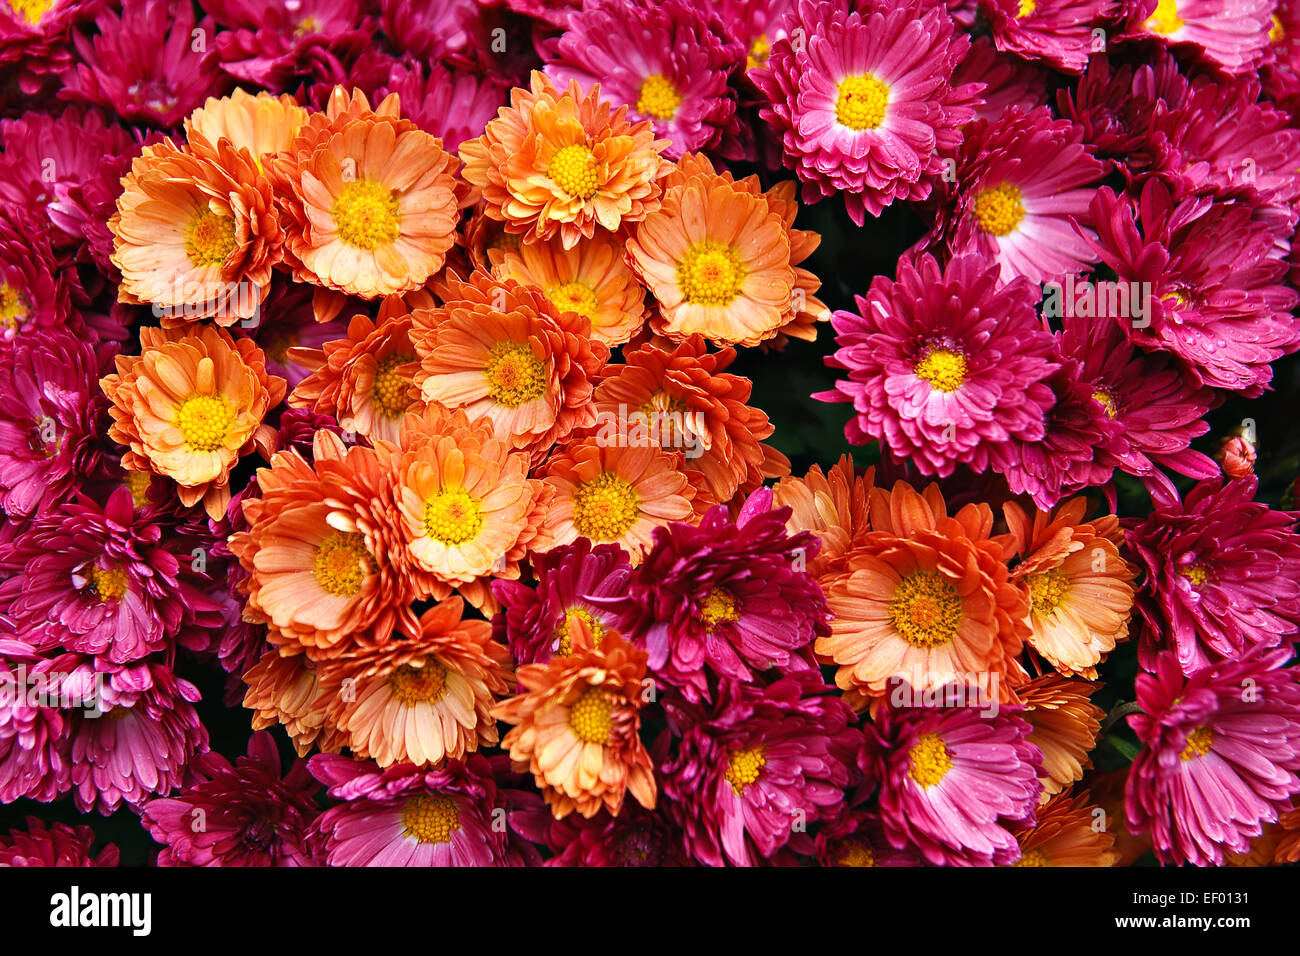 Flowers. Stock Photo